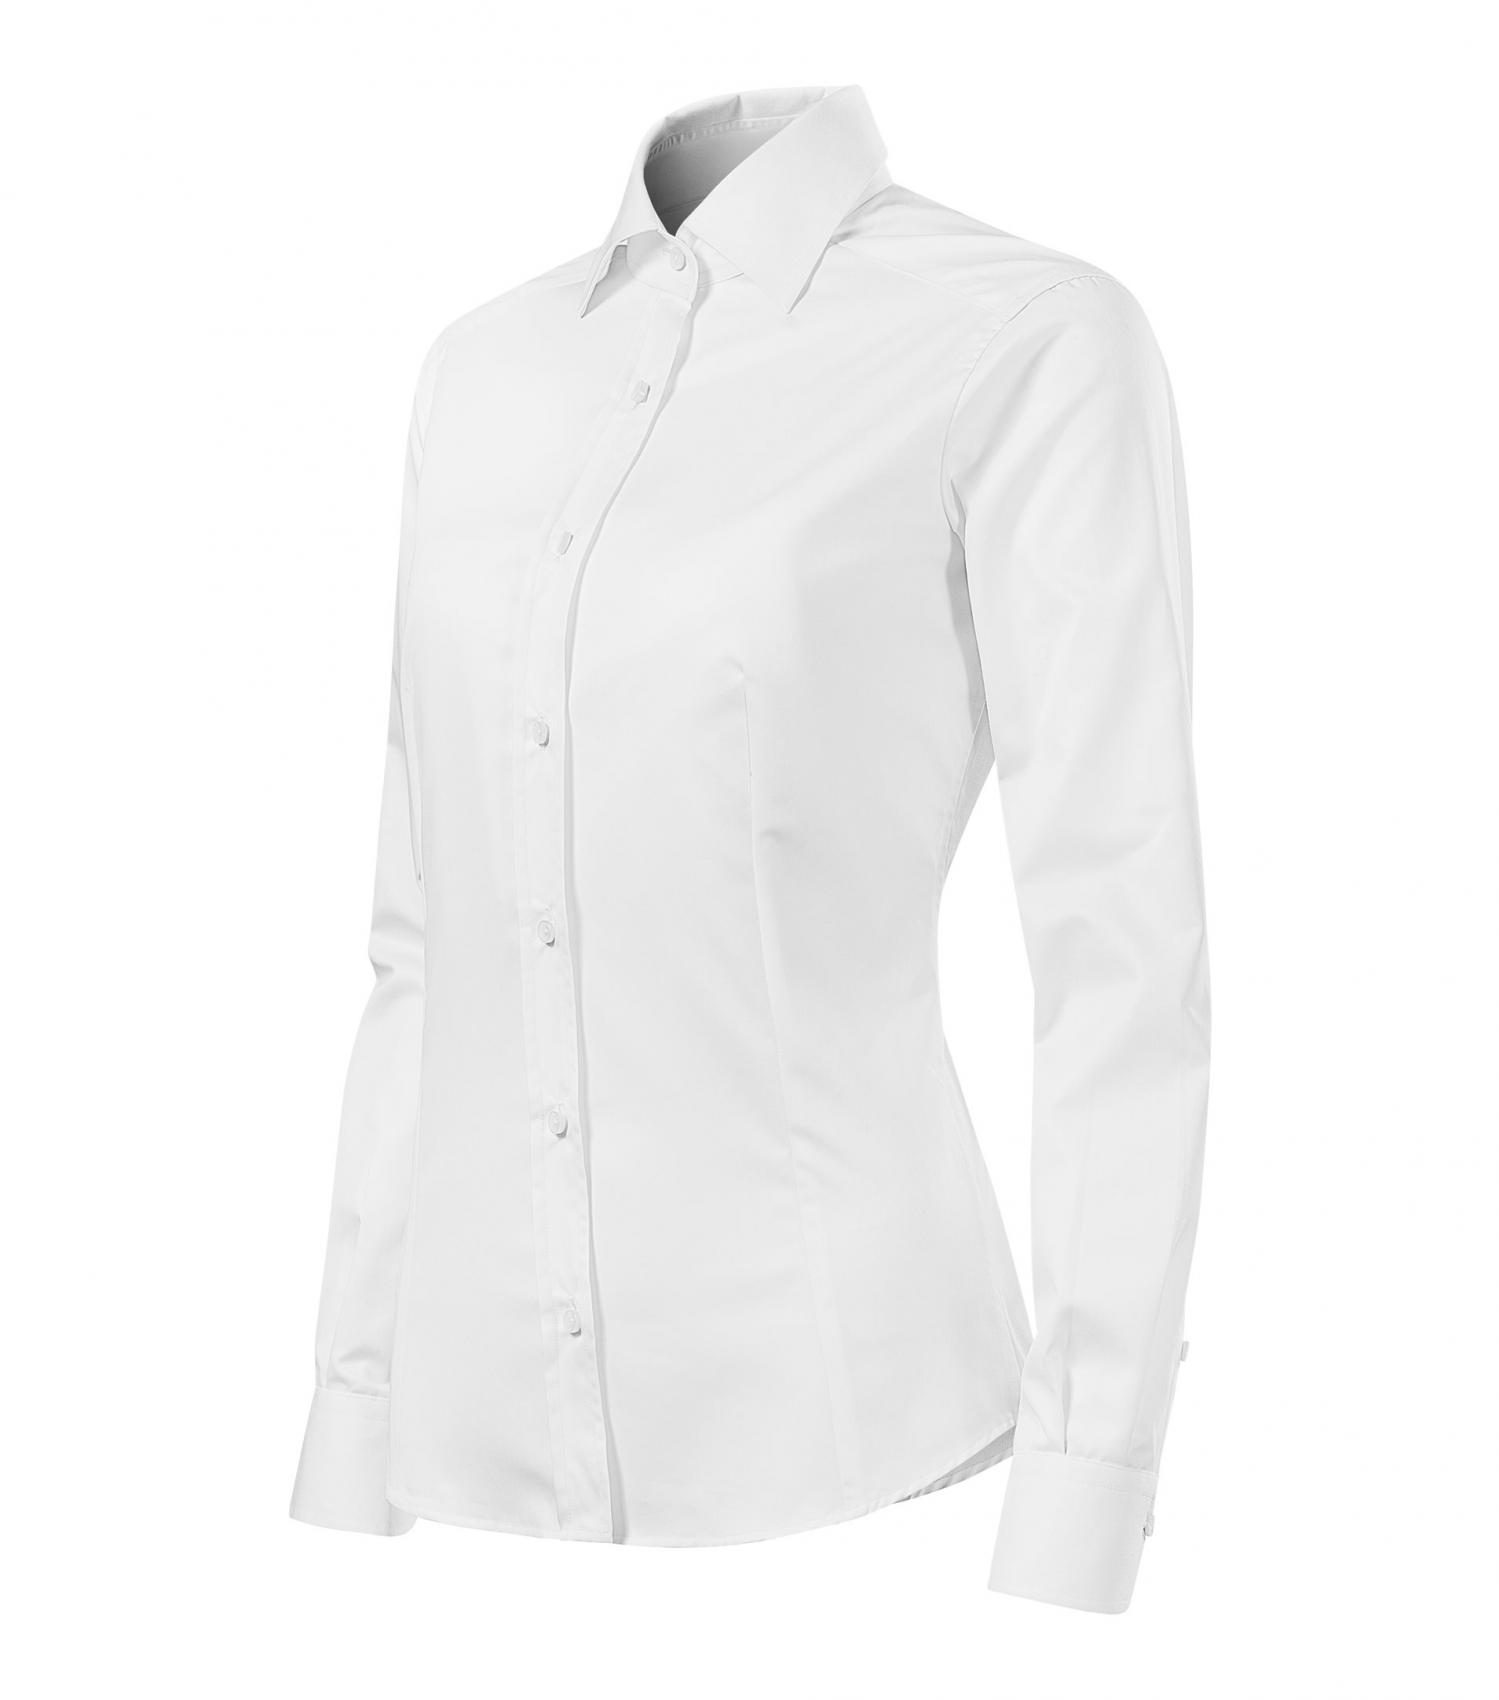 Damska koszula biznesowa MALFINI Journey 265-biały